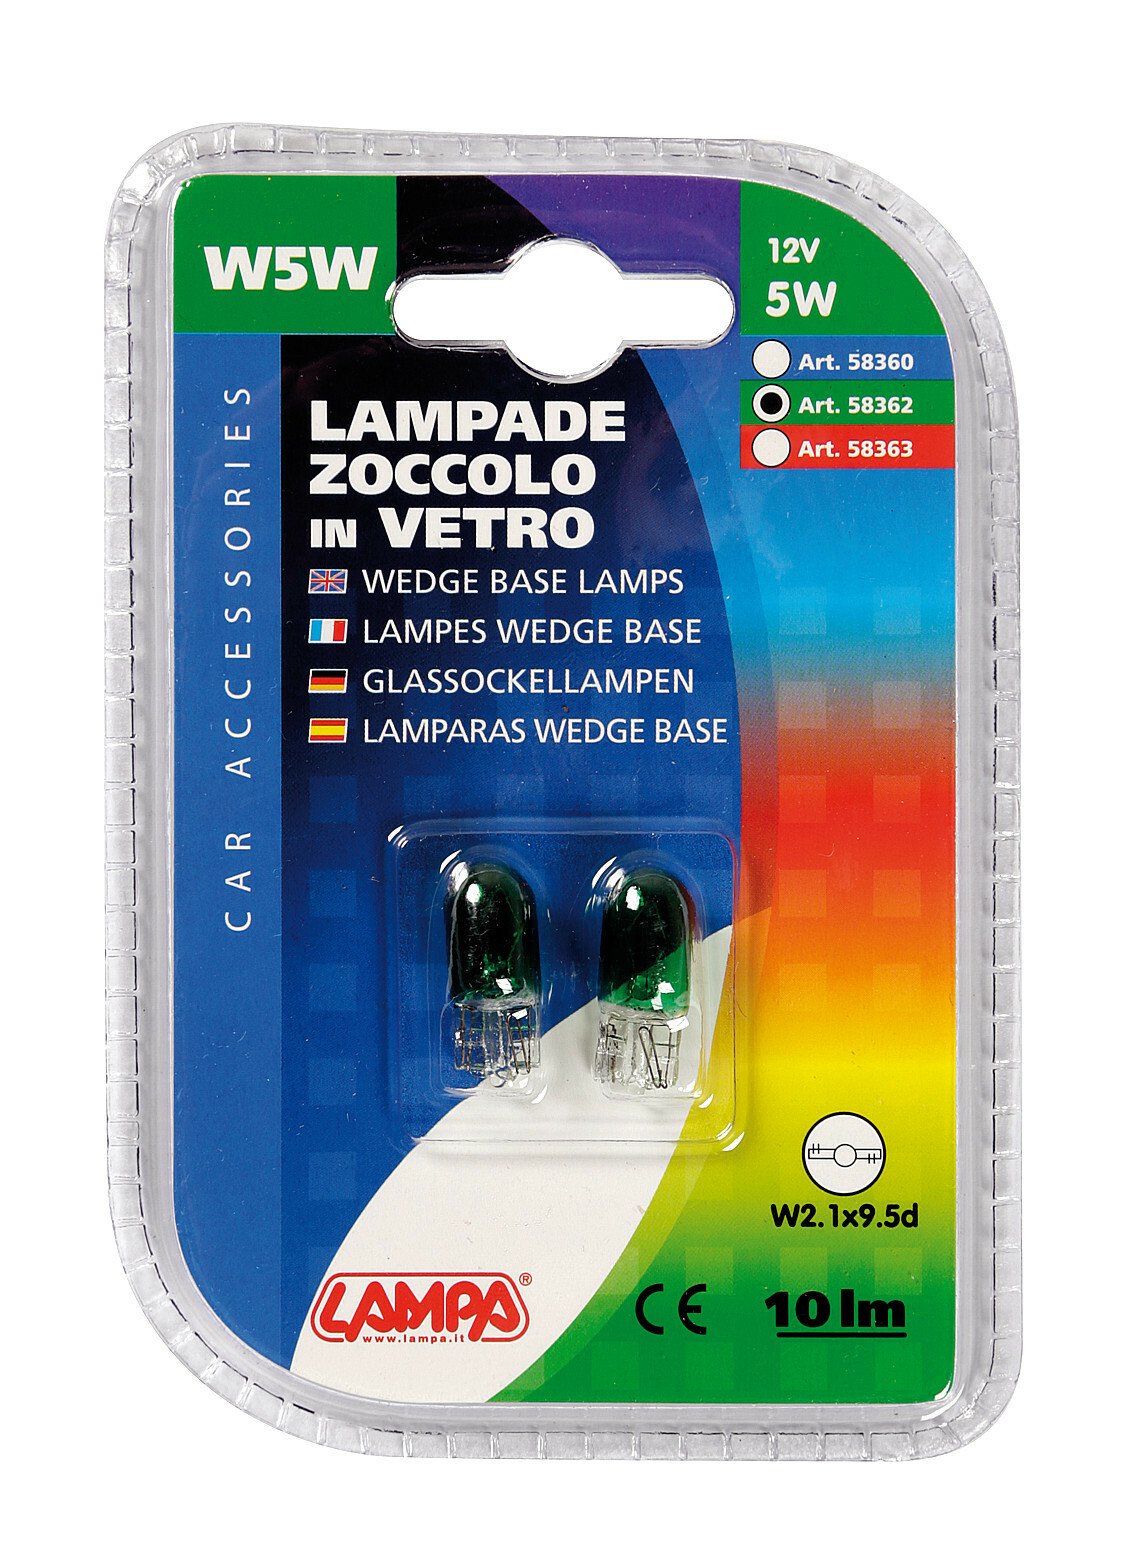 12V Wedge base lamp - (W5W) - 5W - W2,1x9,5d - 2 pcs - D/Blister - Green thumb